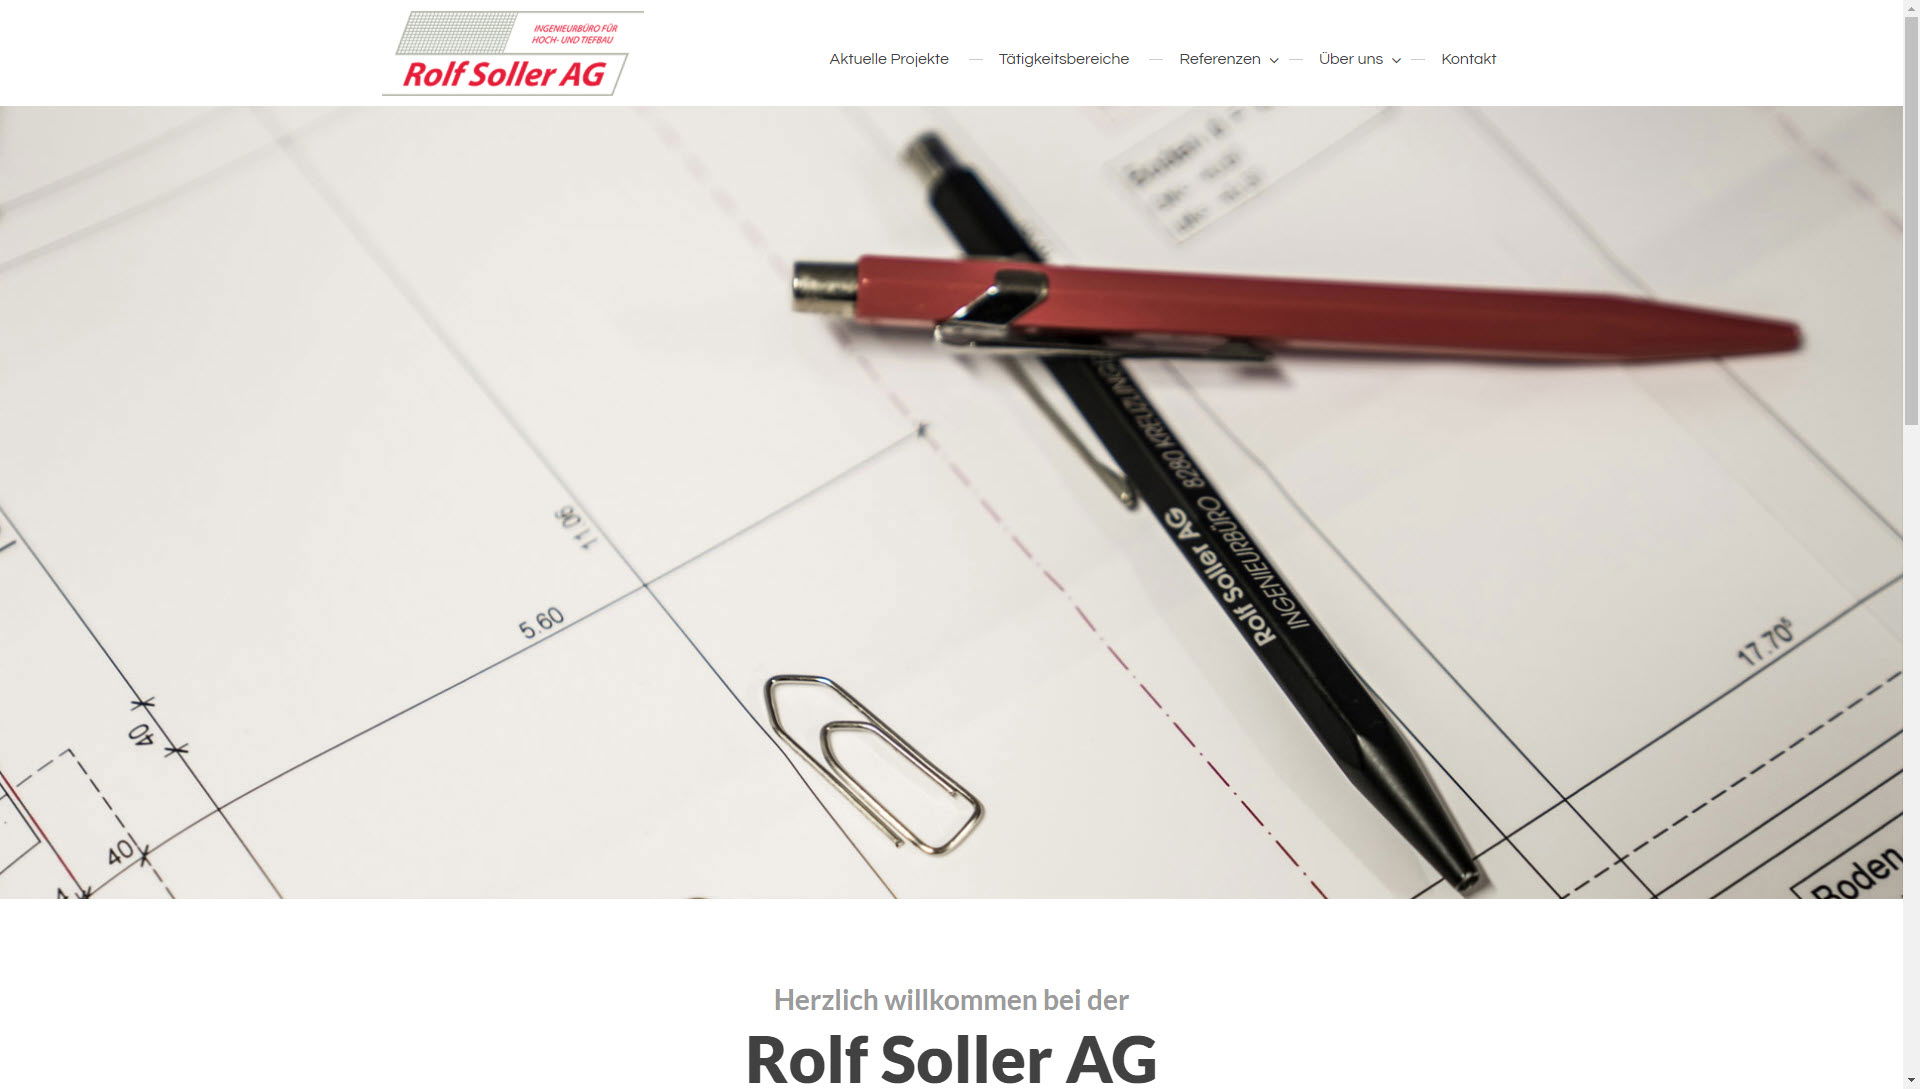 Rolf Soller AG